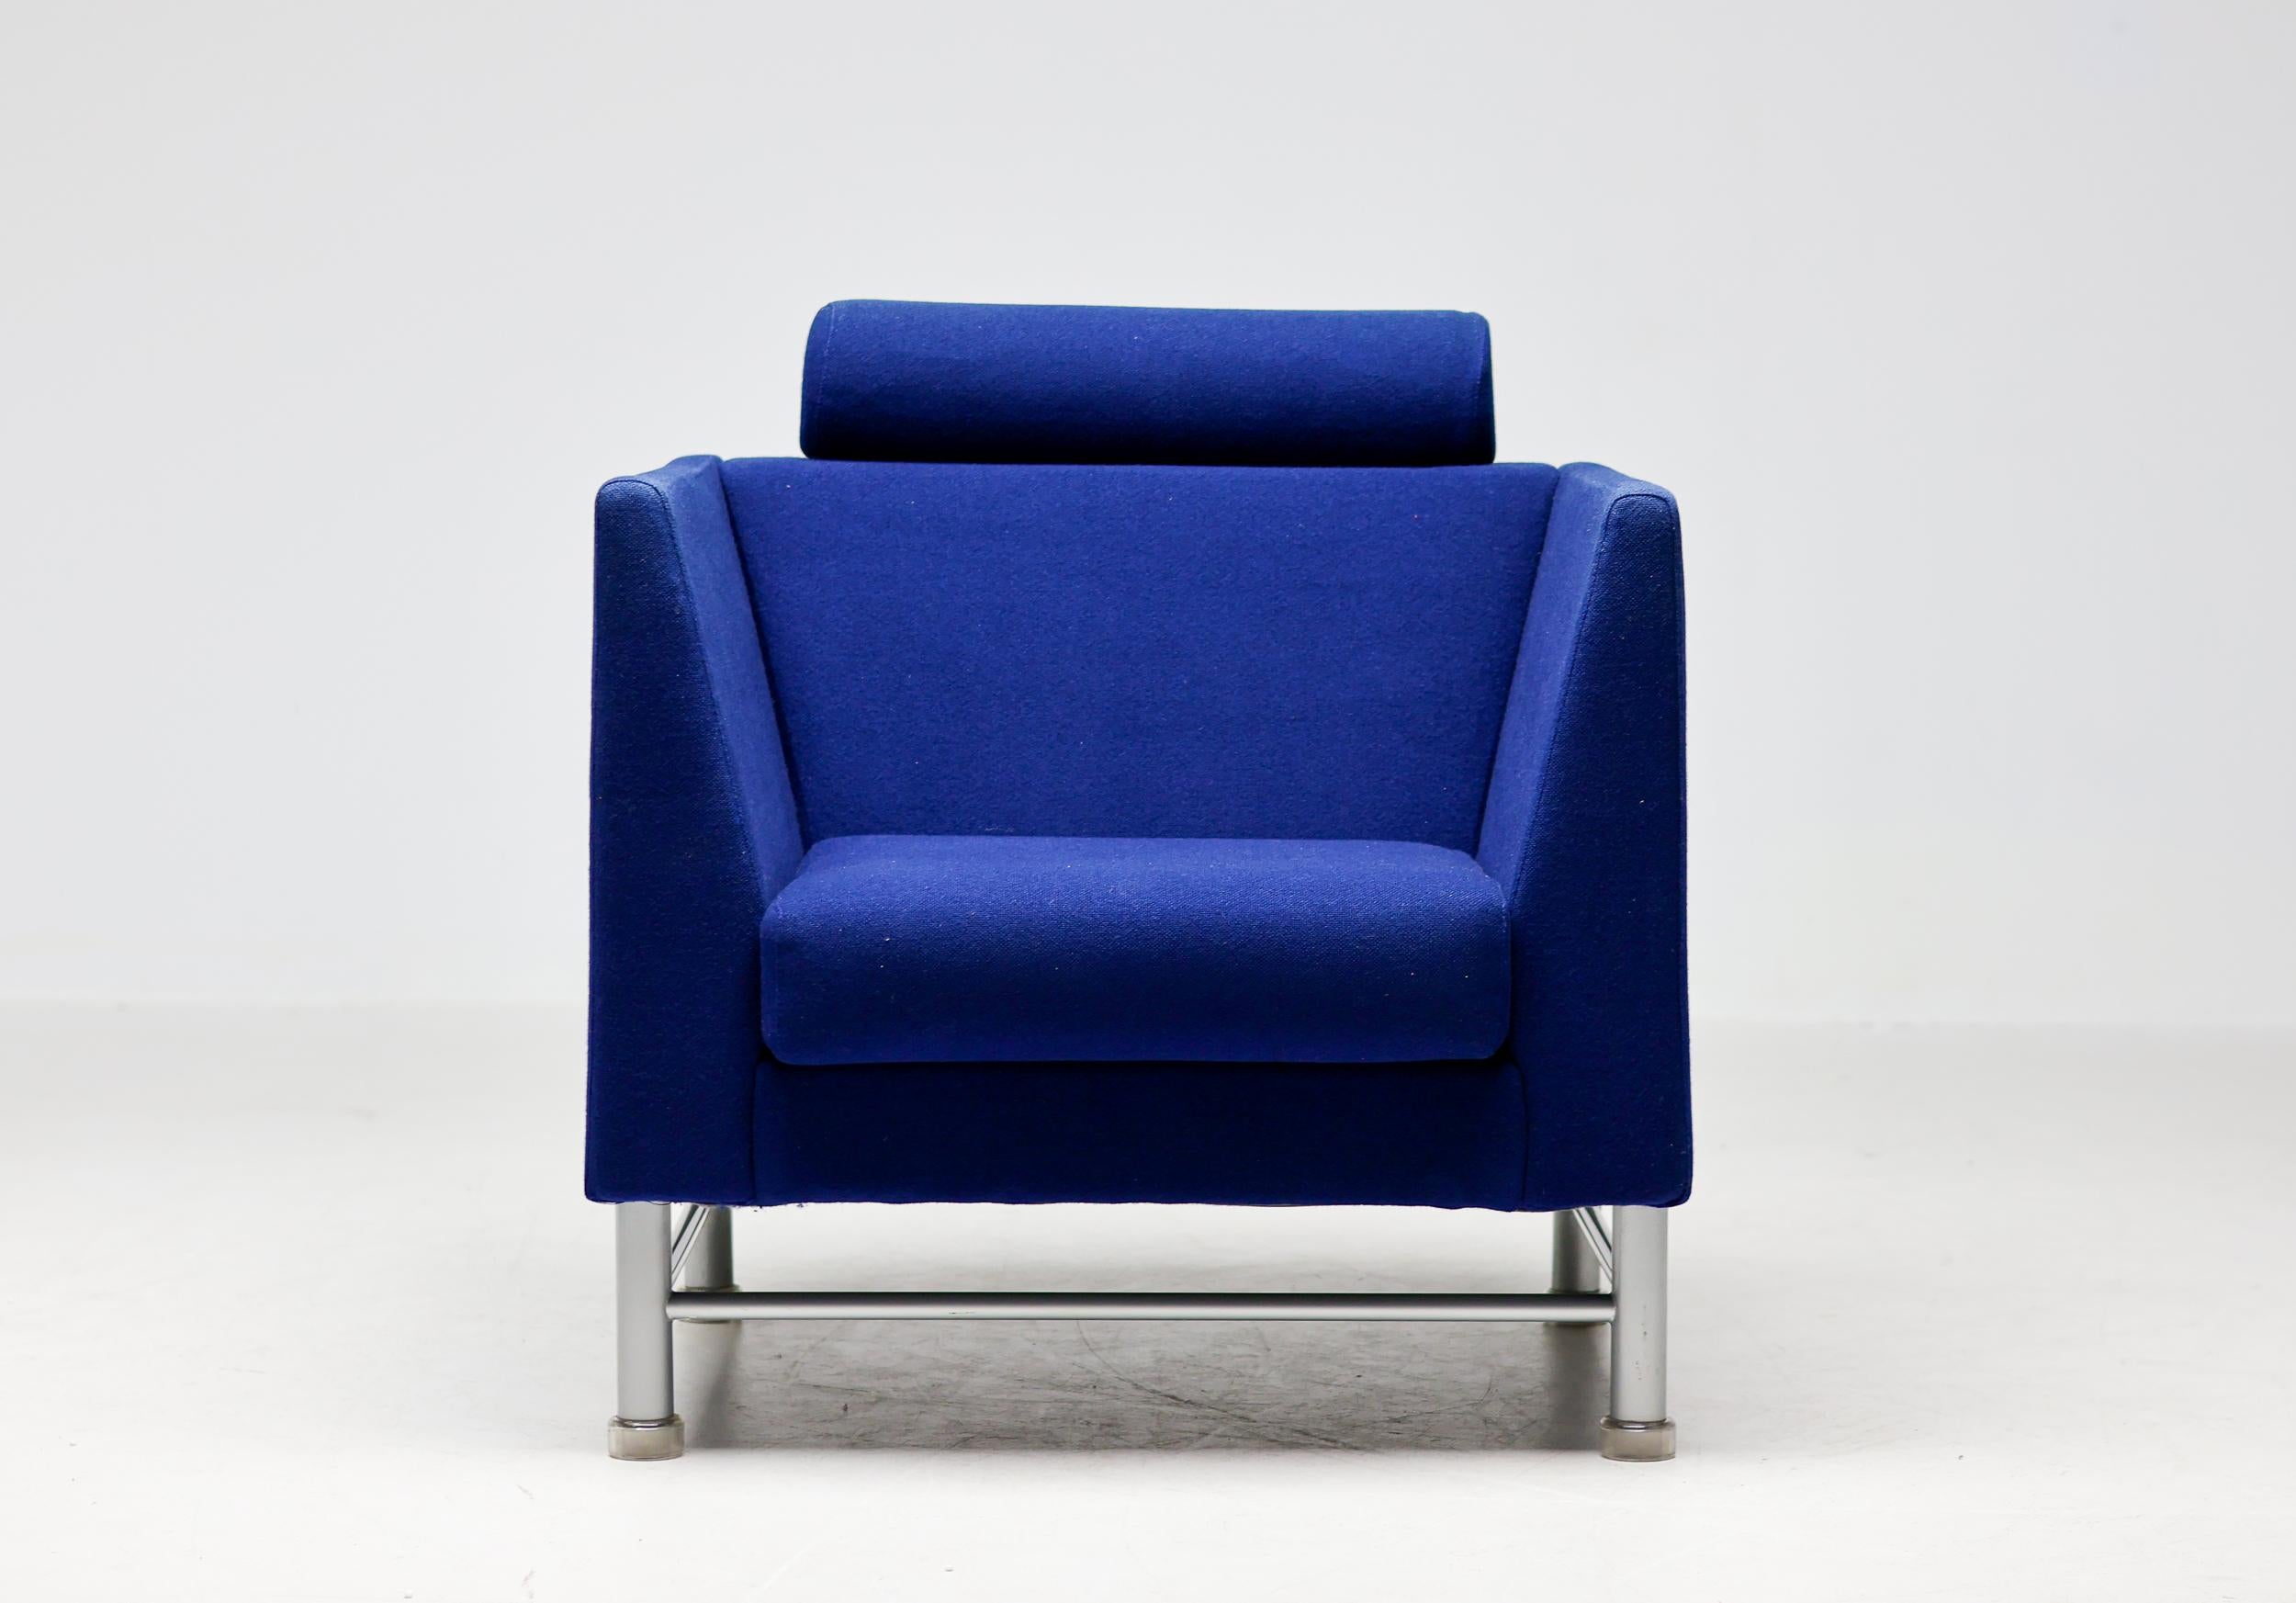 Fauteuil iconique East Side en bleu royal conçu par Ettore Sottsass pour Knoll International en 1983.
Chaise postmoderne avec tapisserie d'origine dans un état vintage magnifique.
La chaise est dotée d'une base en acier émaillé gris et de pieds en